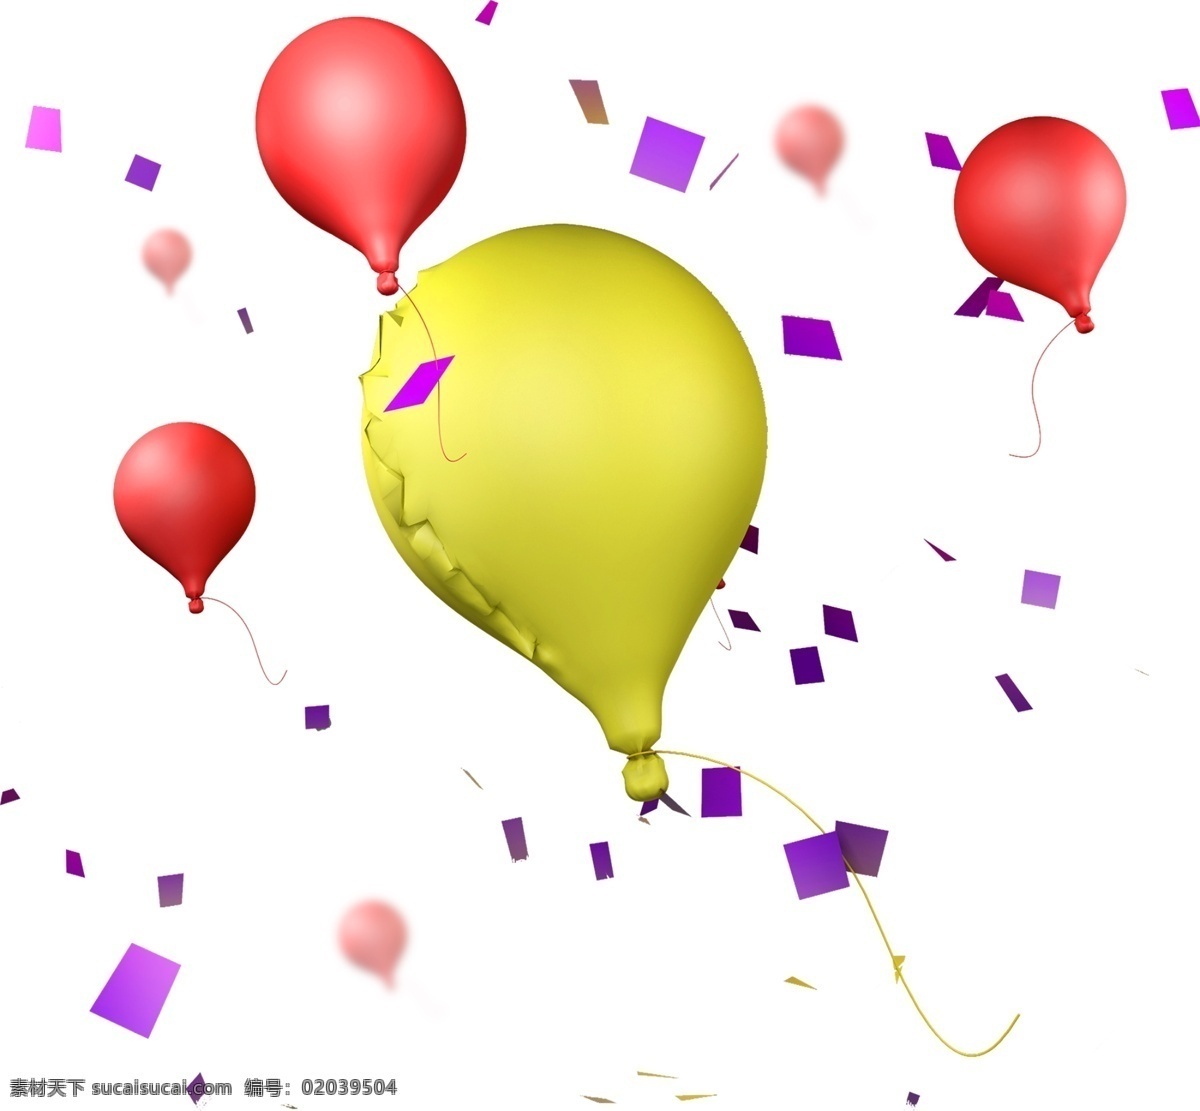 618 彩色 立体 节日 气球 元素 c4d 编辑 节日气氛 彩纸 碎片 欢呼 庆祝 促销 活动 红色 紫色 热闹 炫彩 源 文